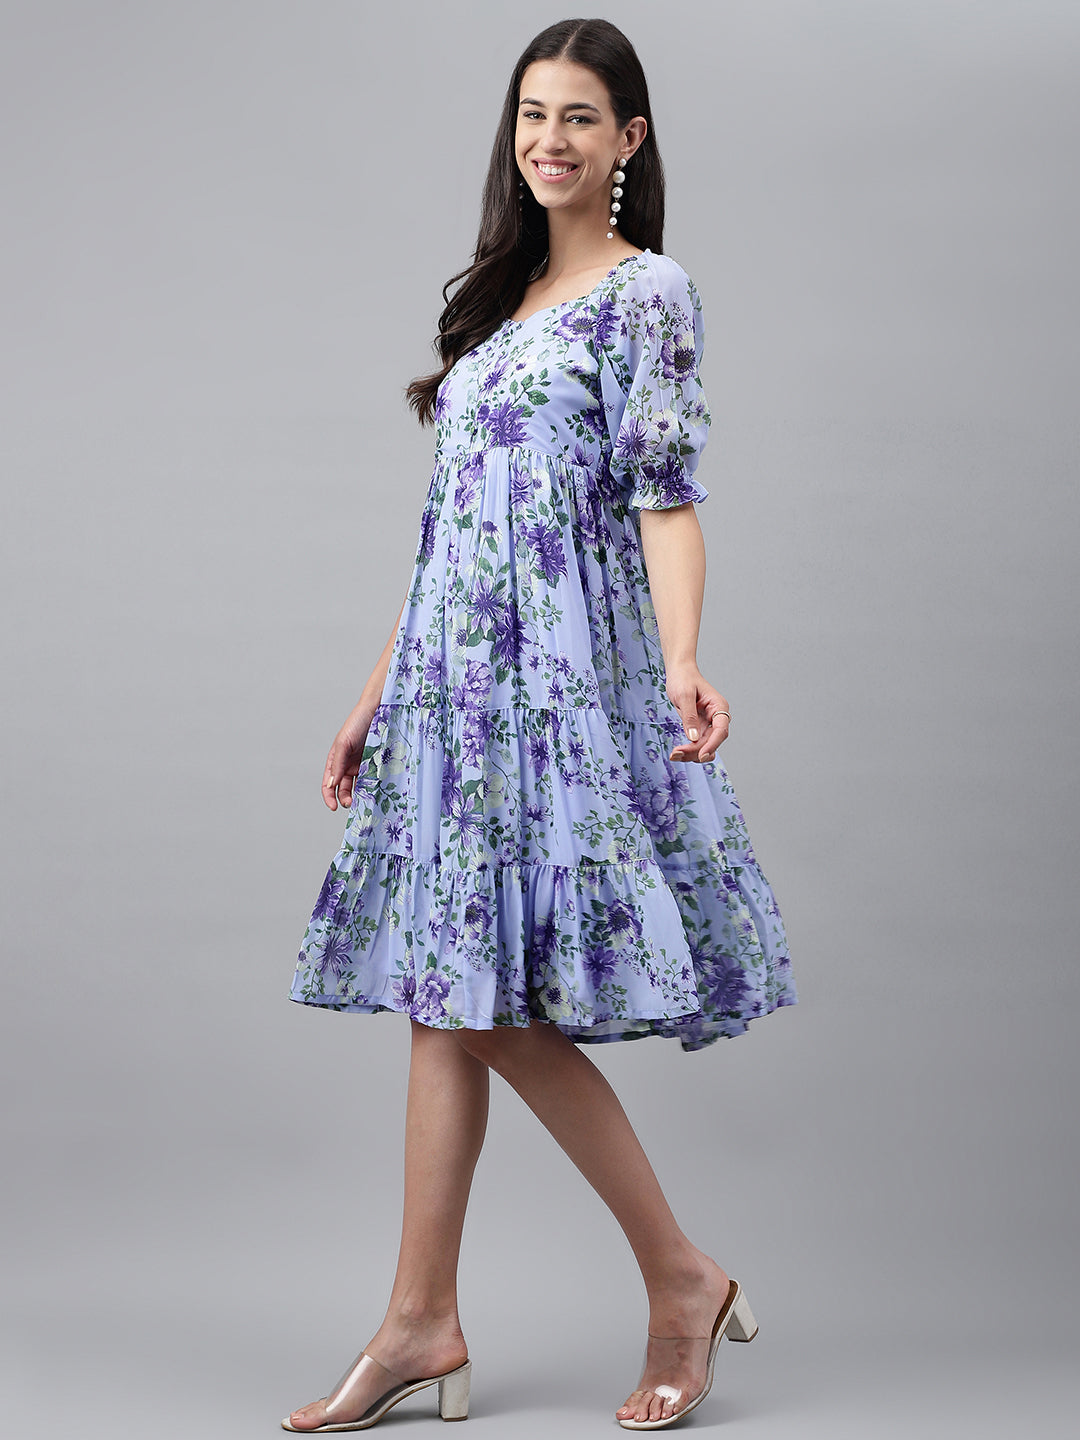 Dress: Buy grey handwoven cotton A-line dress online at bebaakstudio –  Bebaak